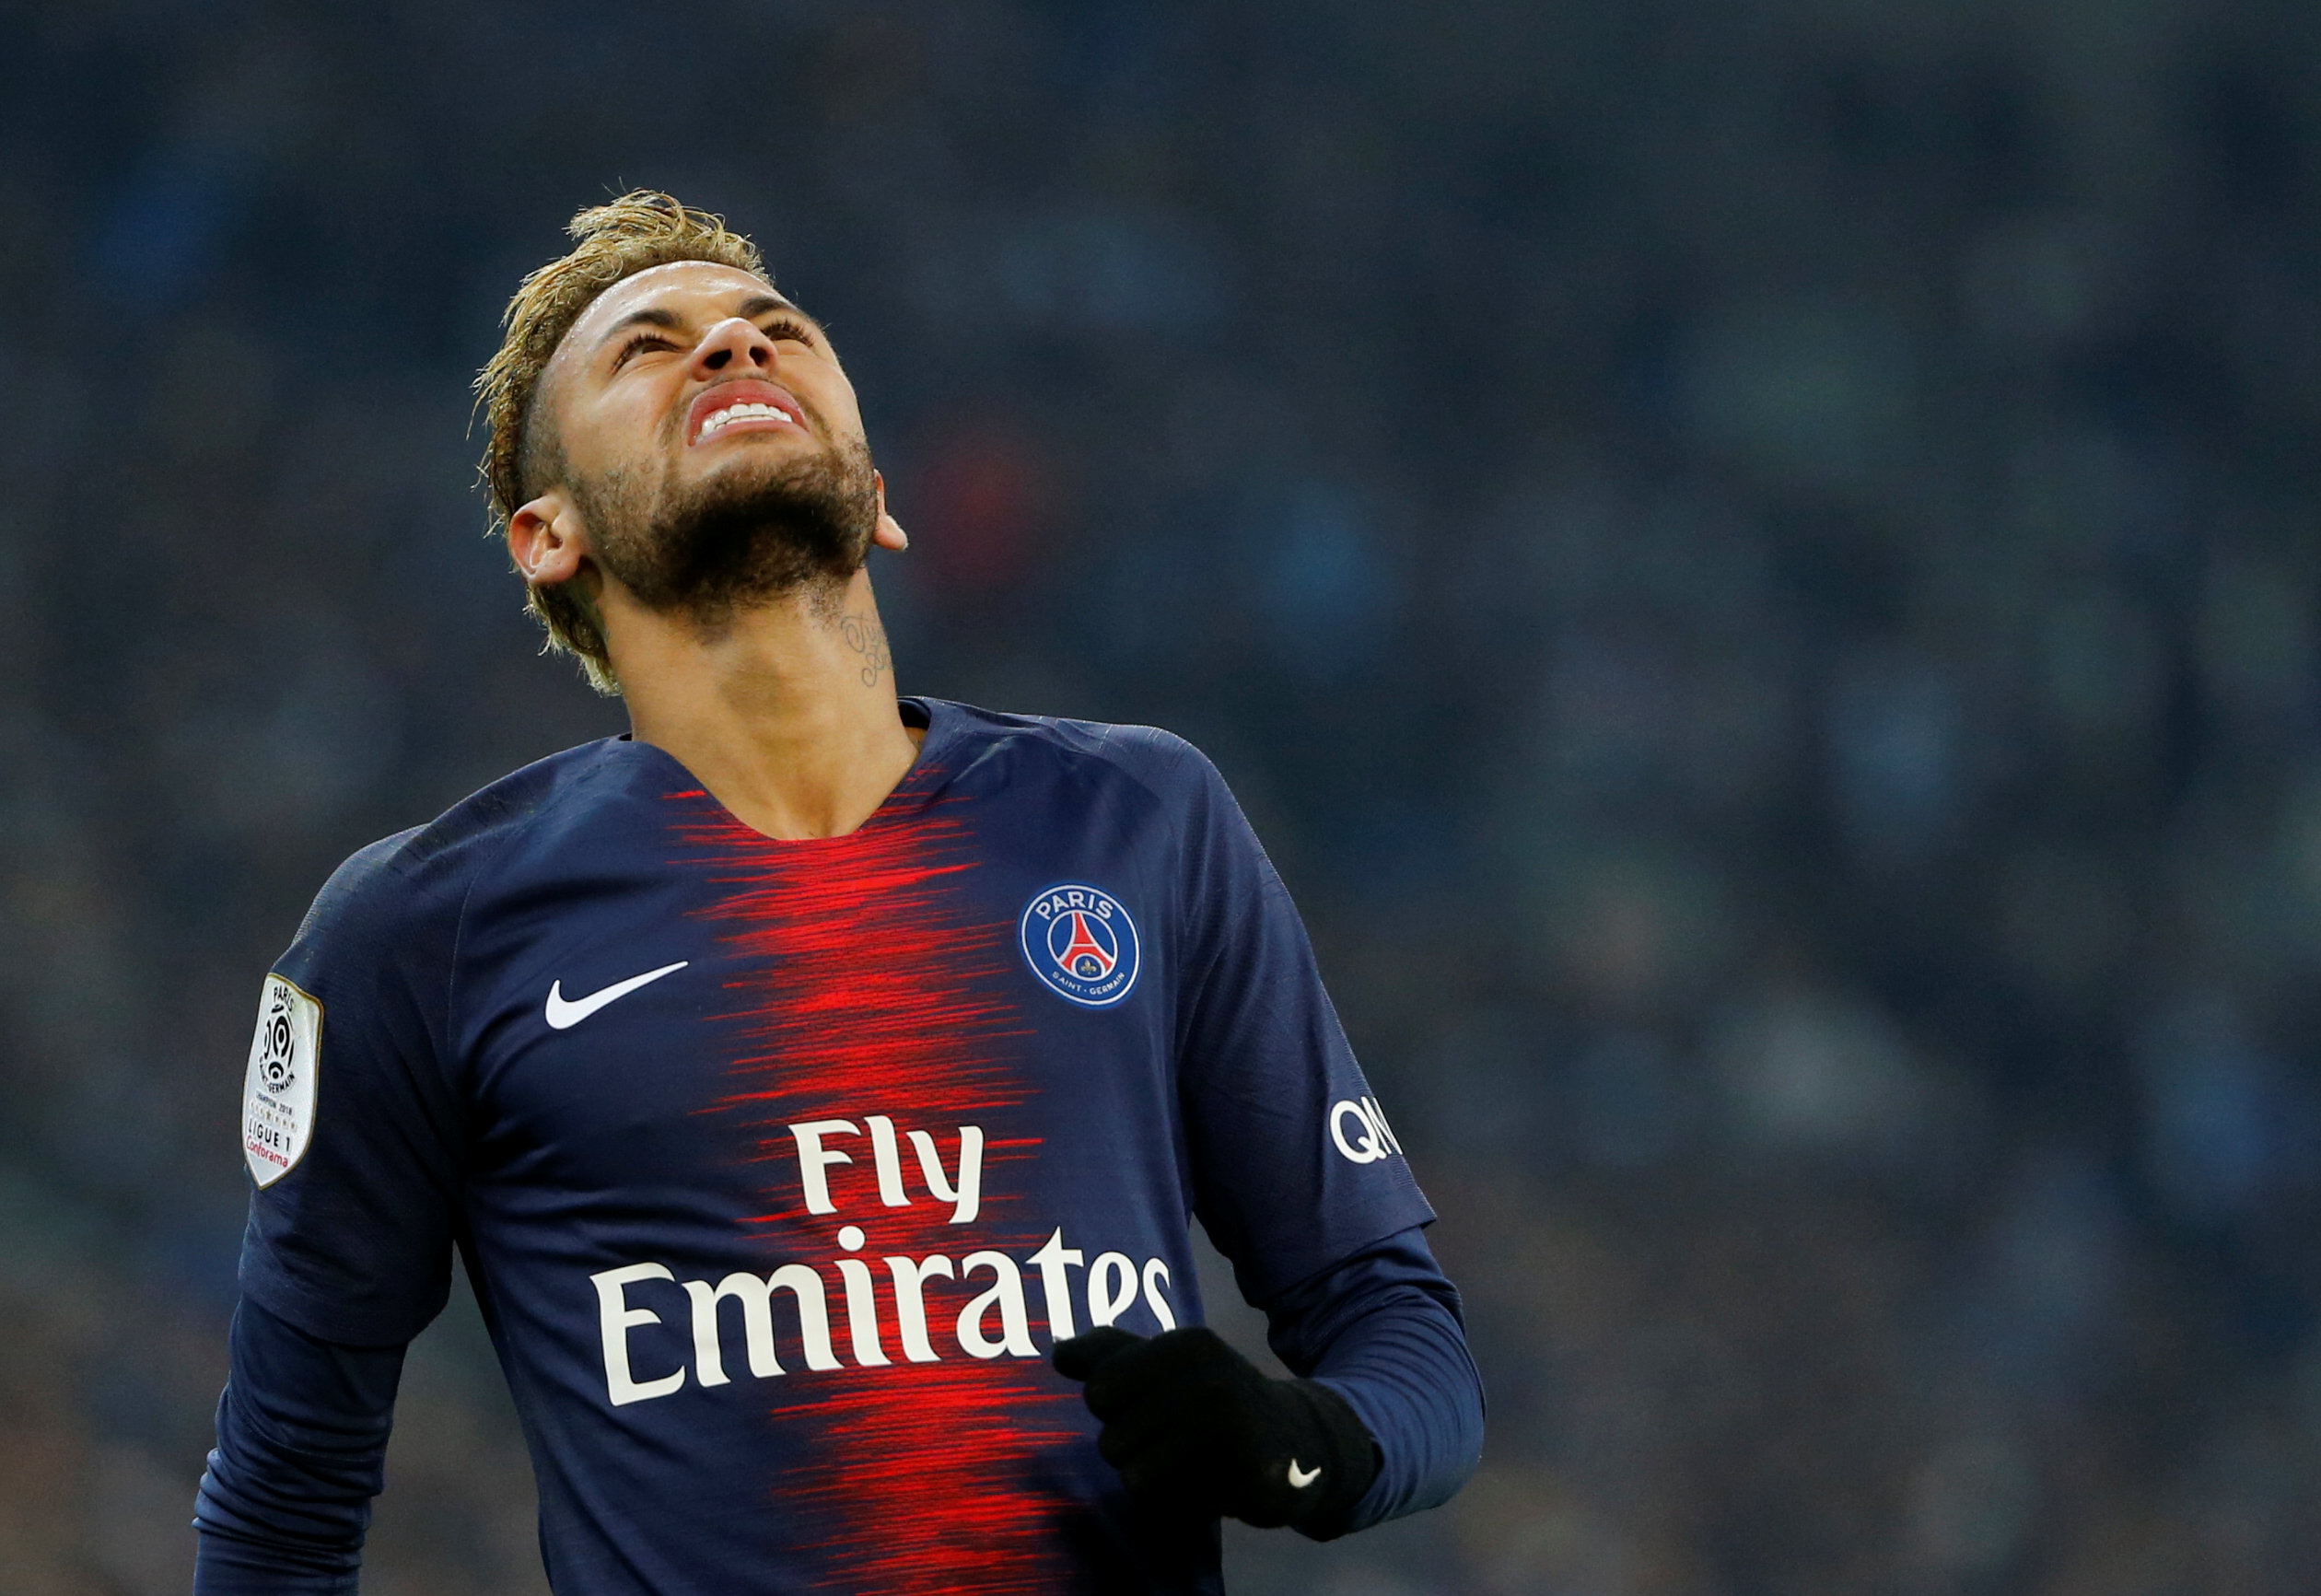 El error de un patrocinador de Neymar que reveló su futuro en plena puja entre Barcelona y PSG